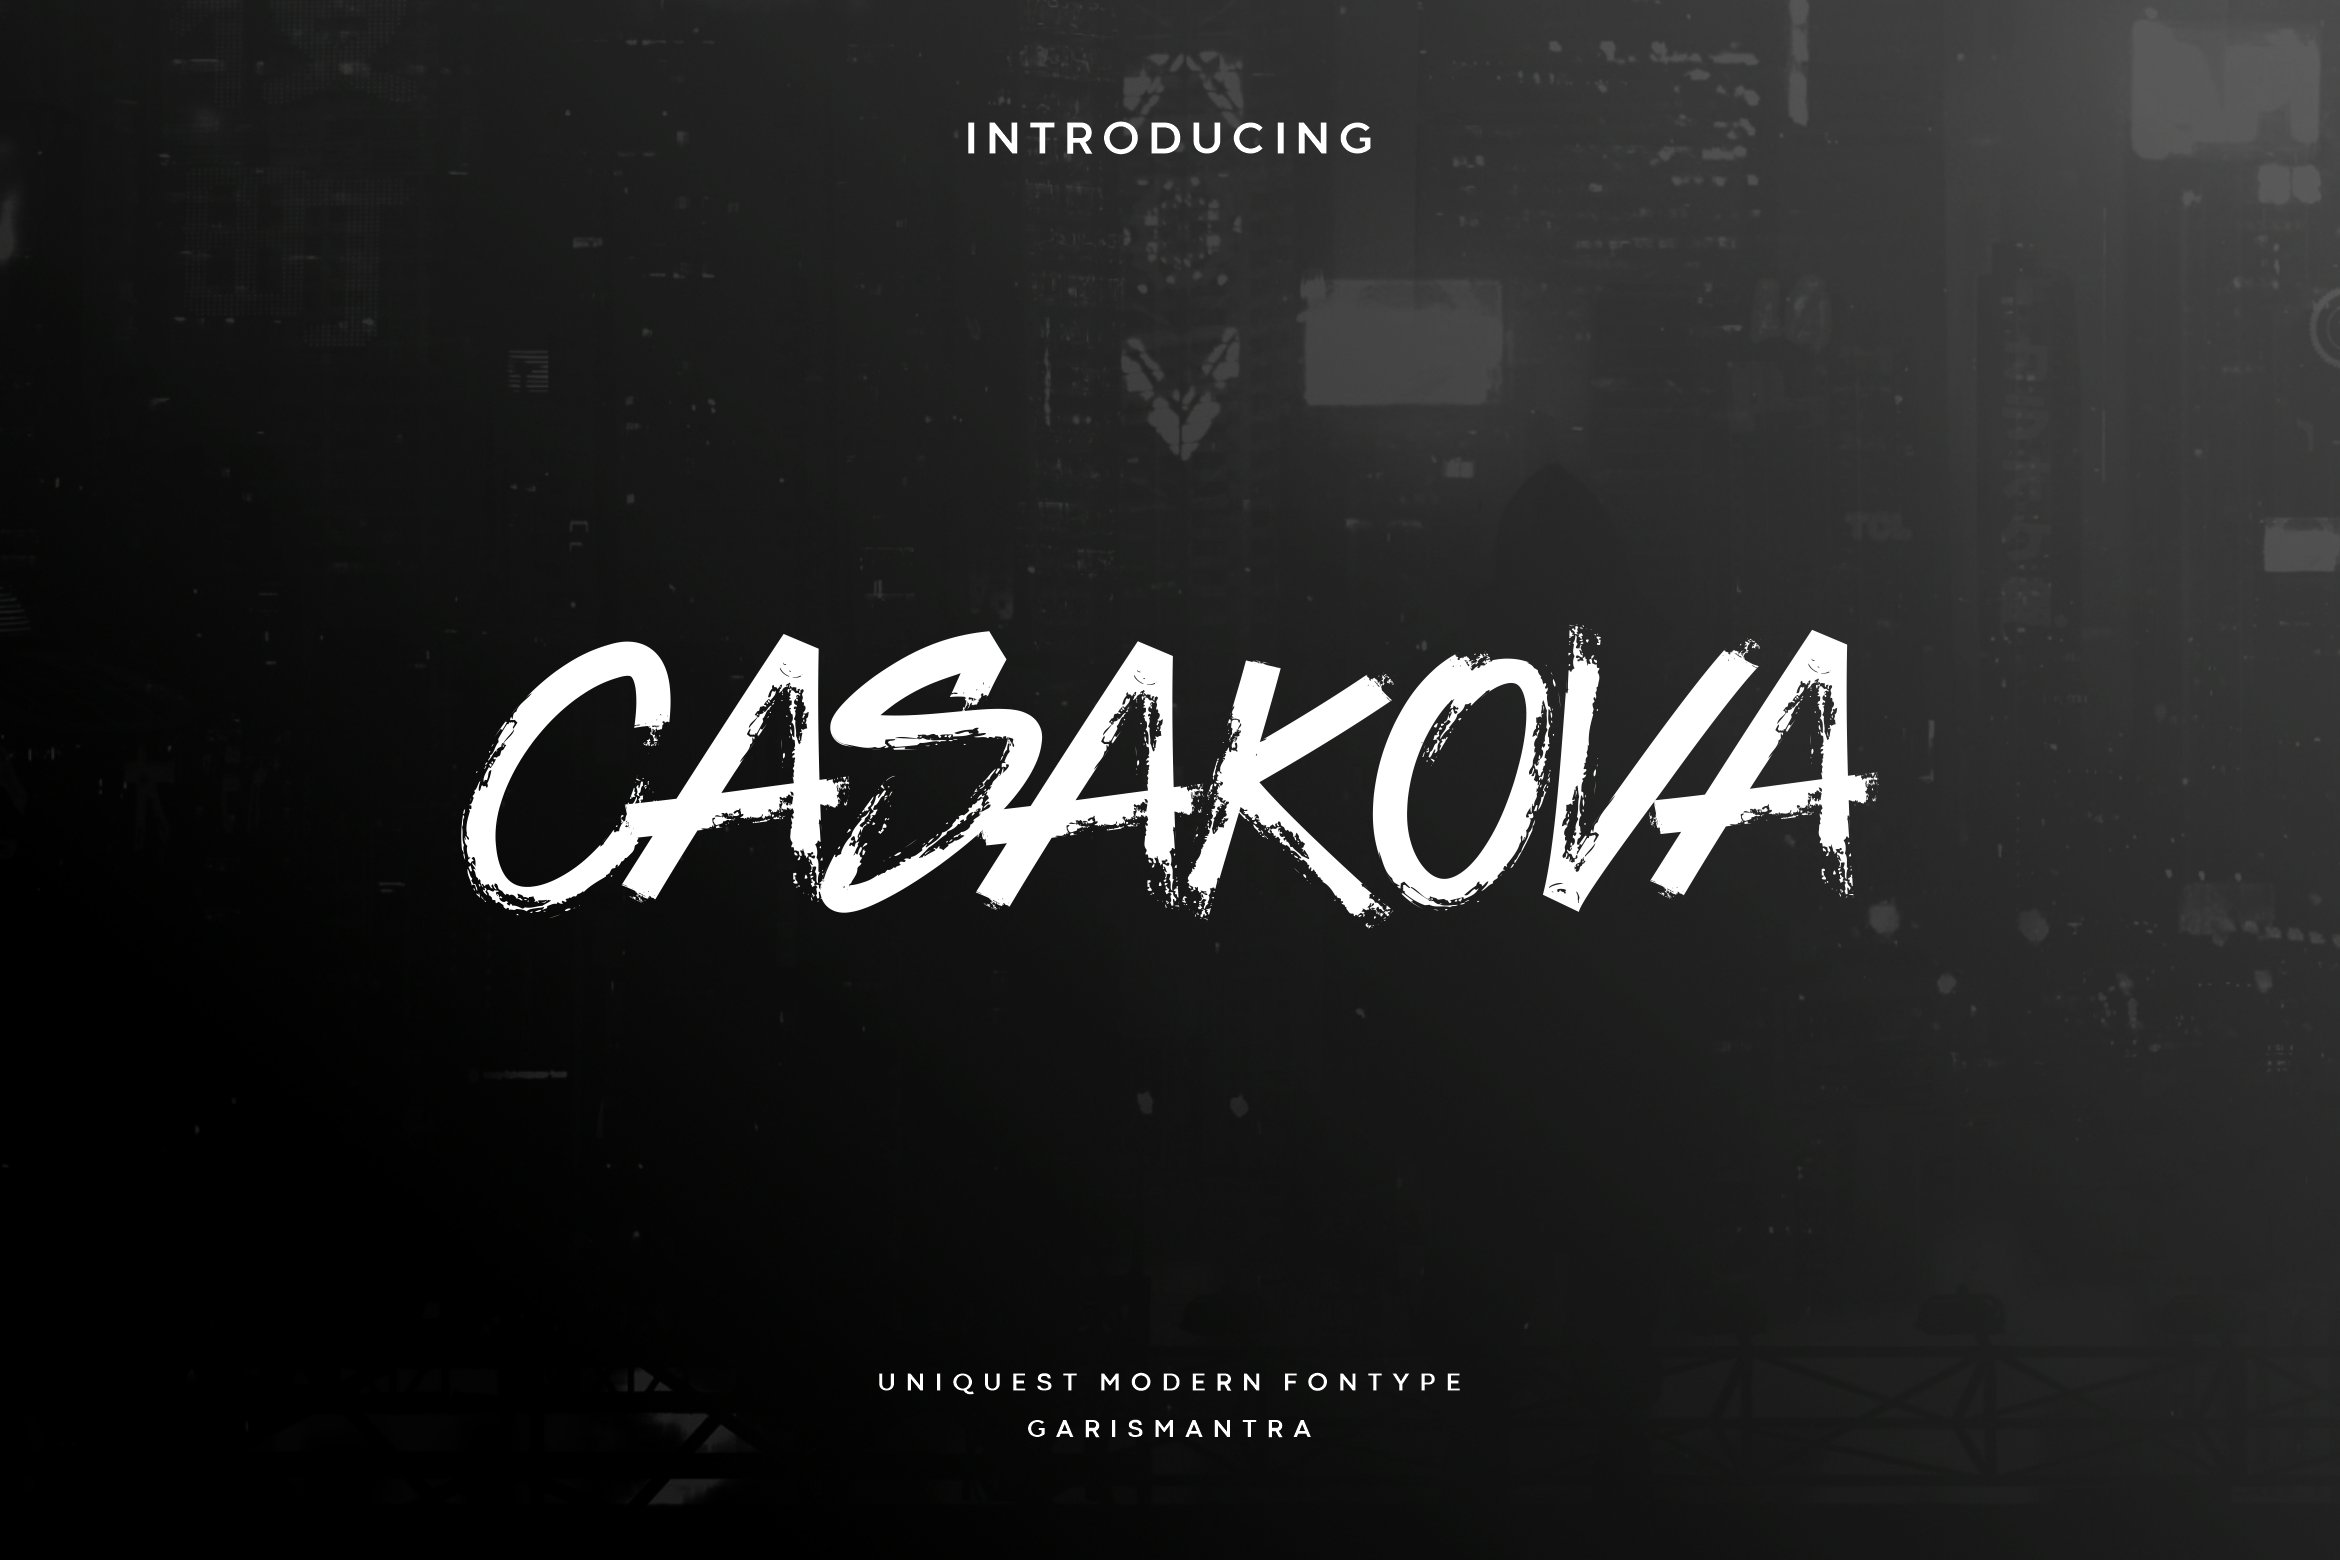 Casakova cover image.